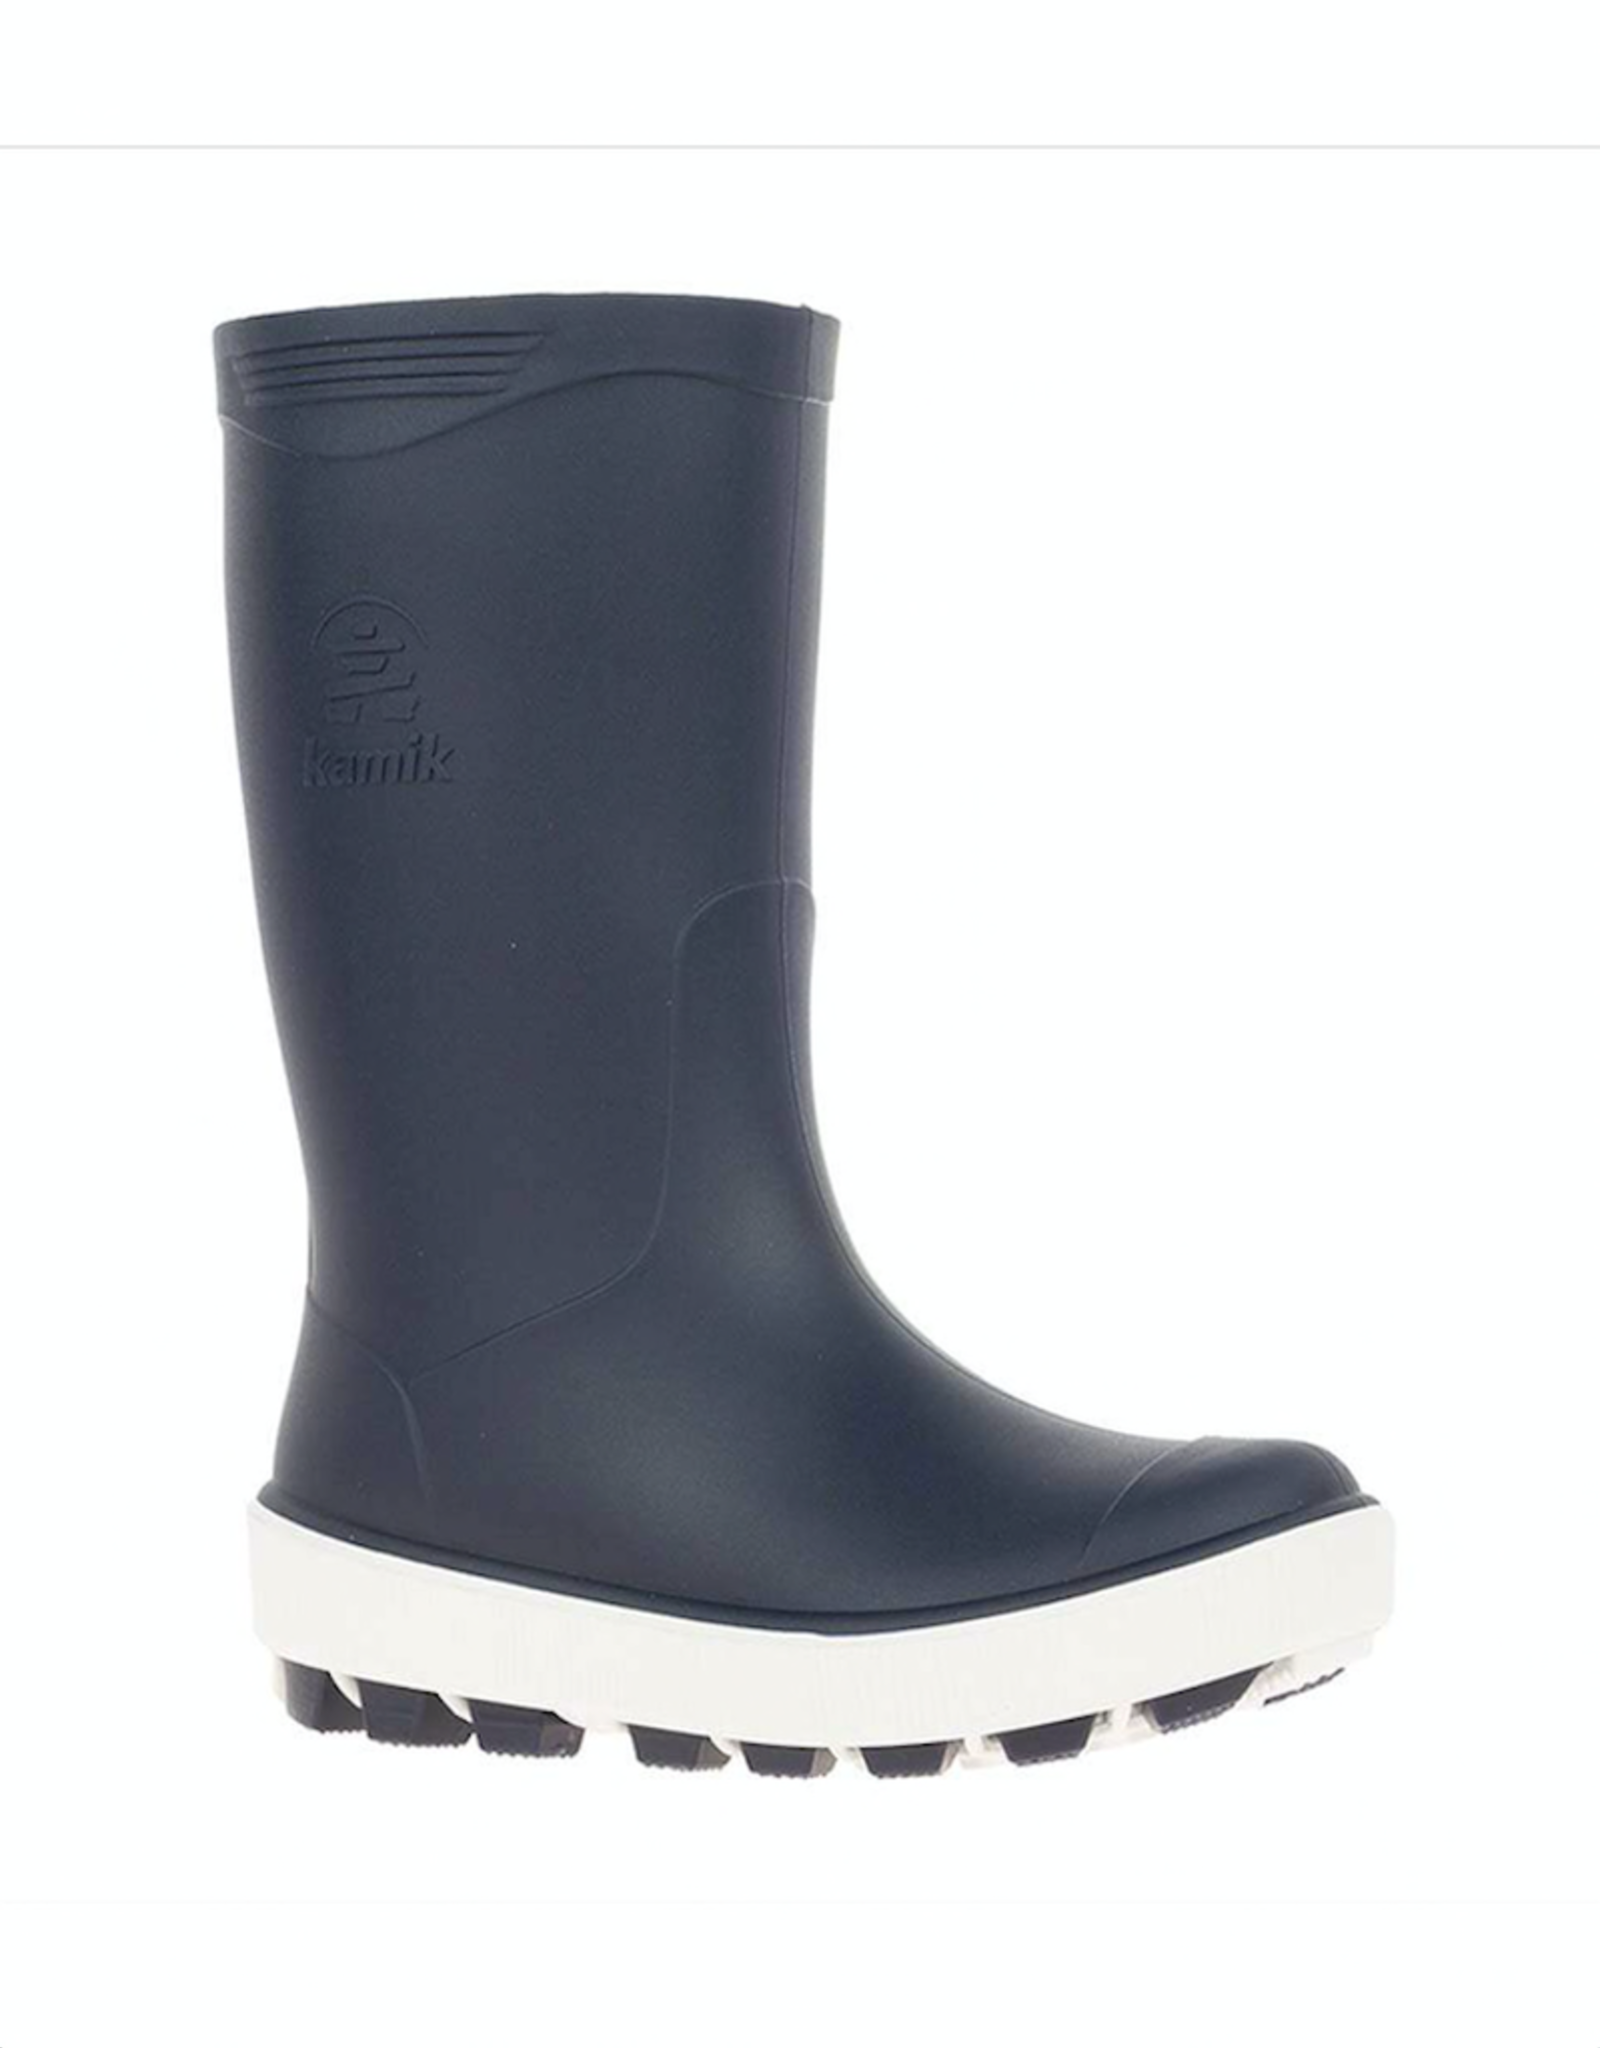 kids white rain boots